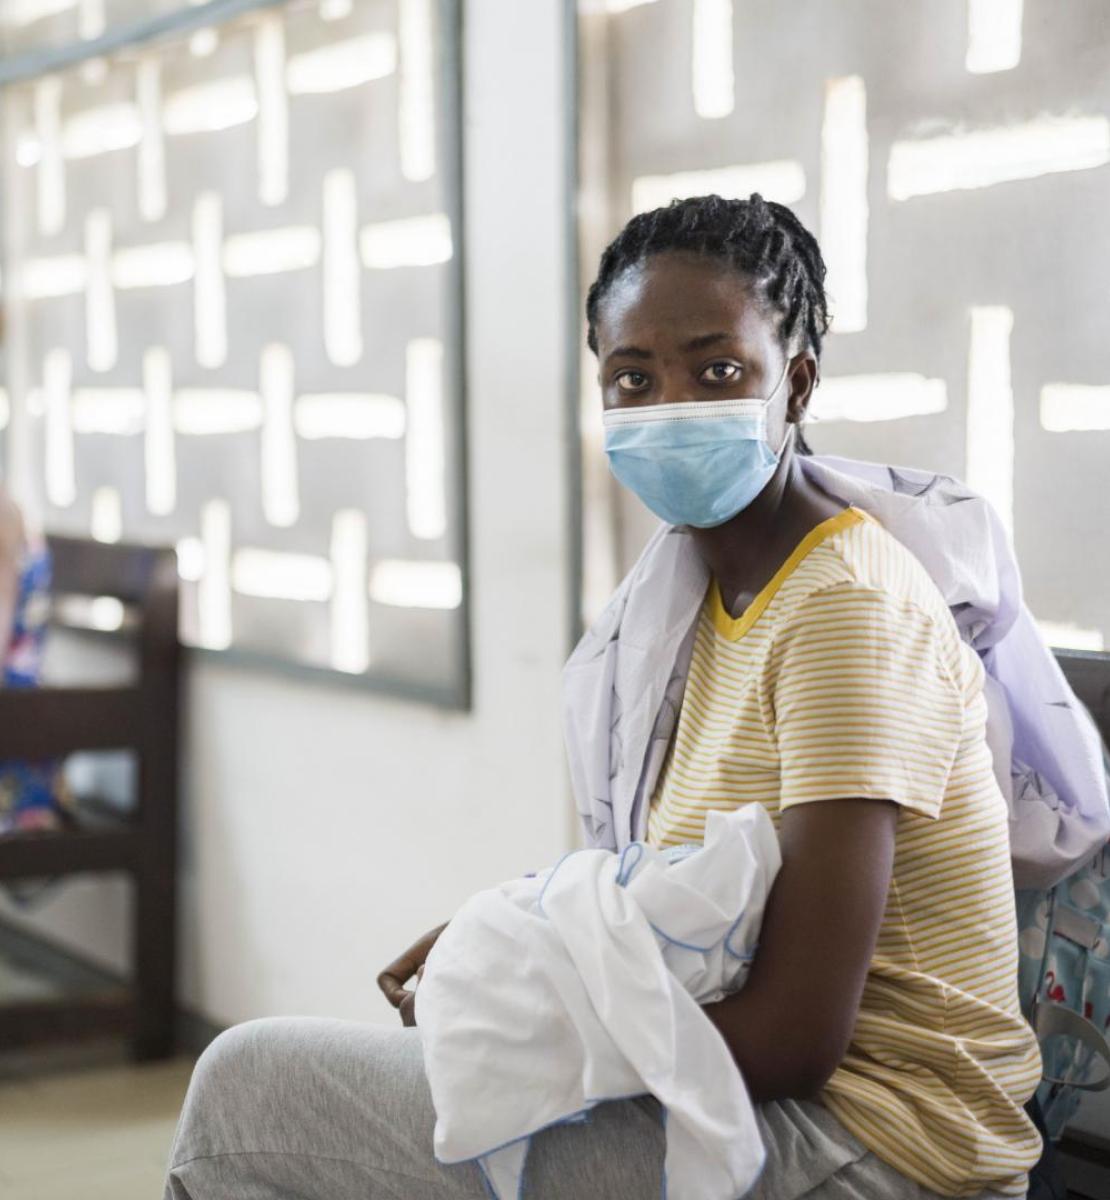 Une femme portant un masque de protection respiratoire et tenant son bébé dans les bras est assise dans une salle d'attente médicale avec d'autres femmes, le regard tourné vers l'objectif.